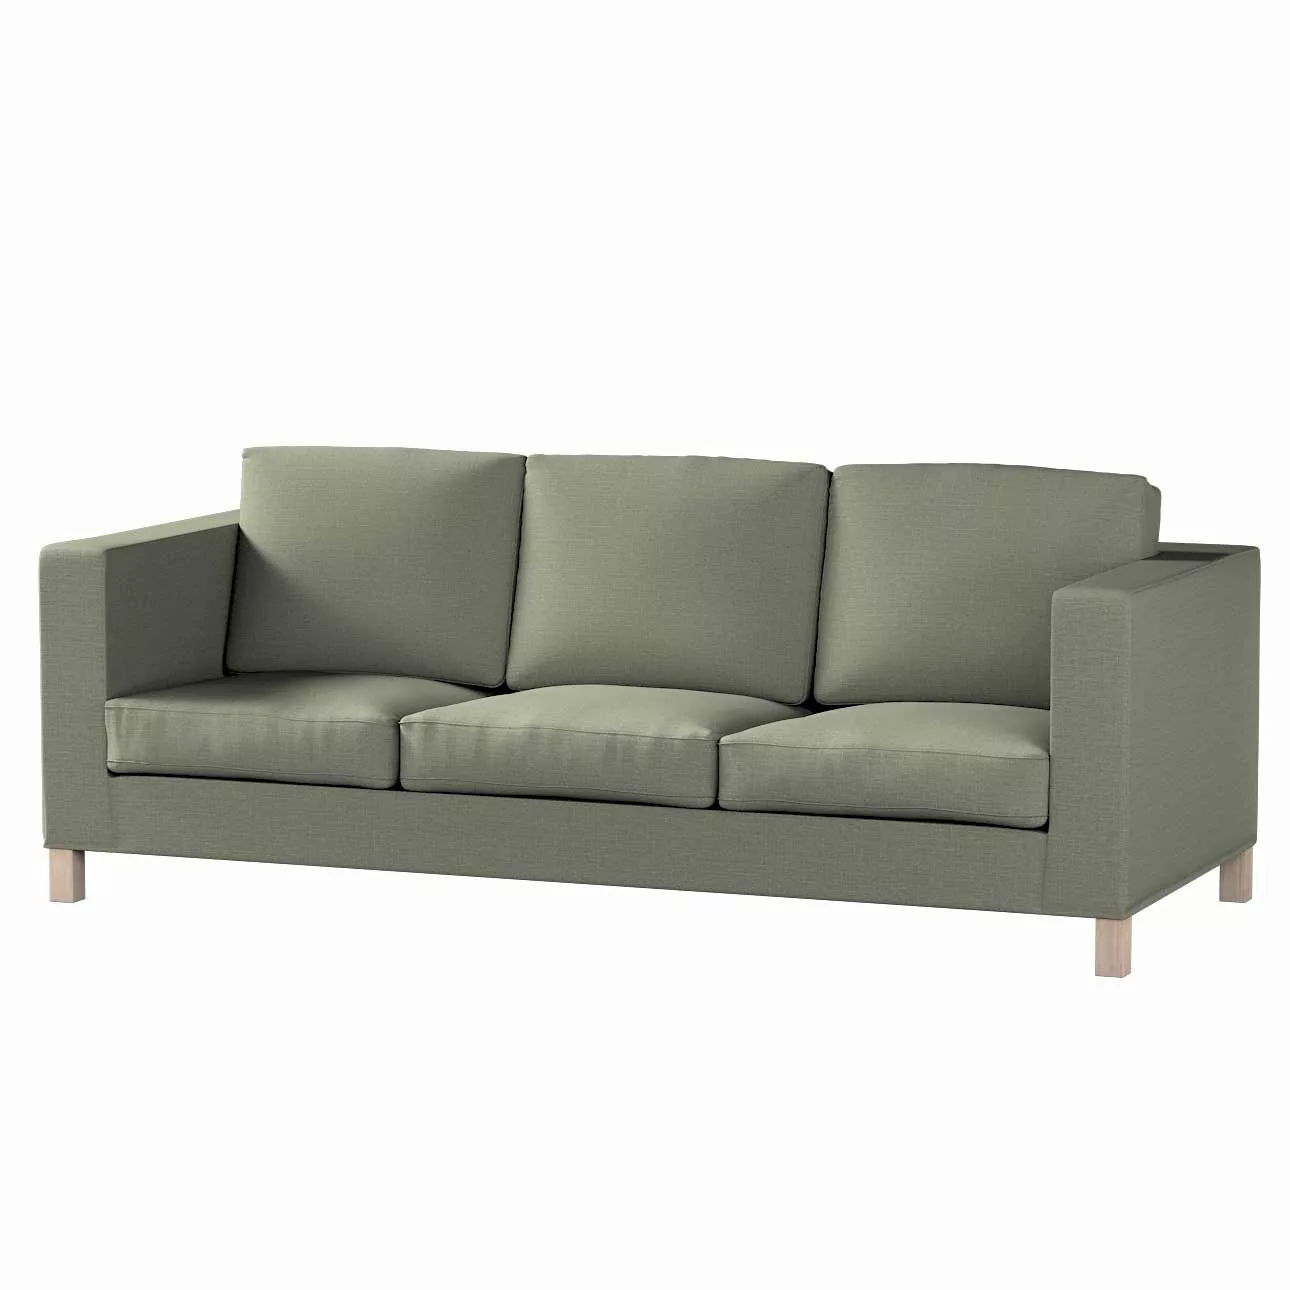 Bezug für Karlanda 3-Sitzer Sofa nicht ausklappbar, kurz, khaki, Bezug für günstig online kaufen